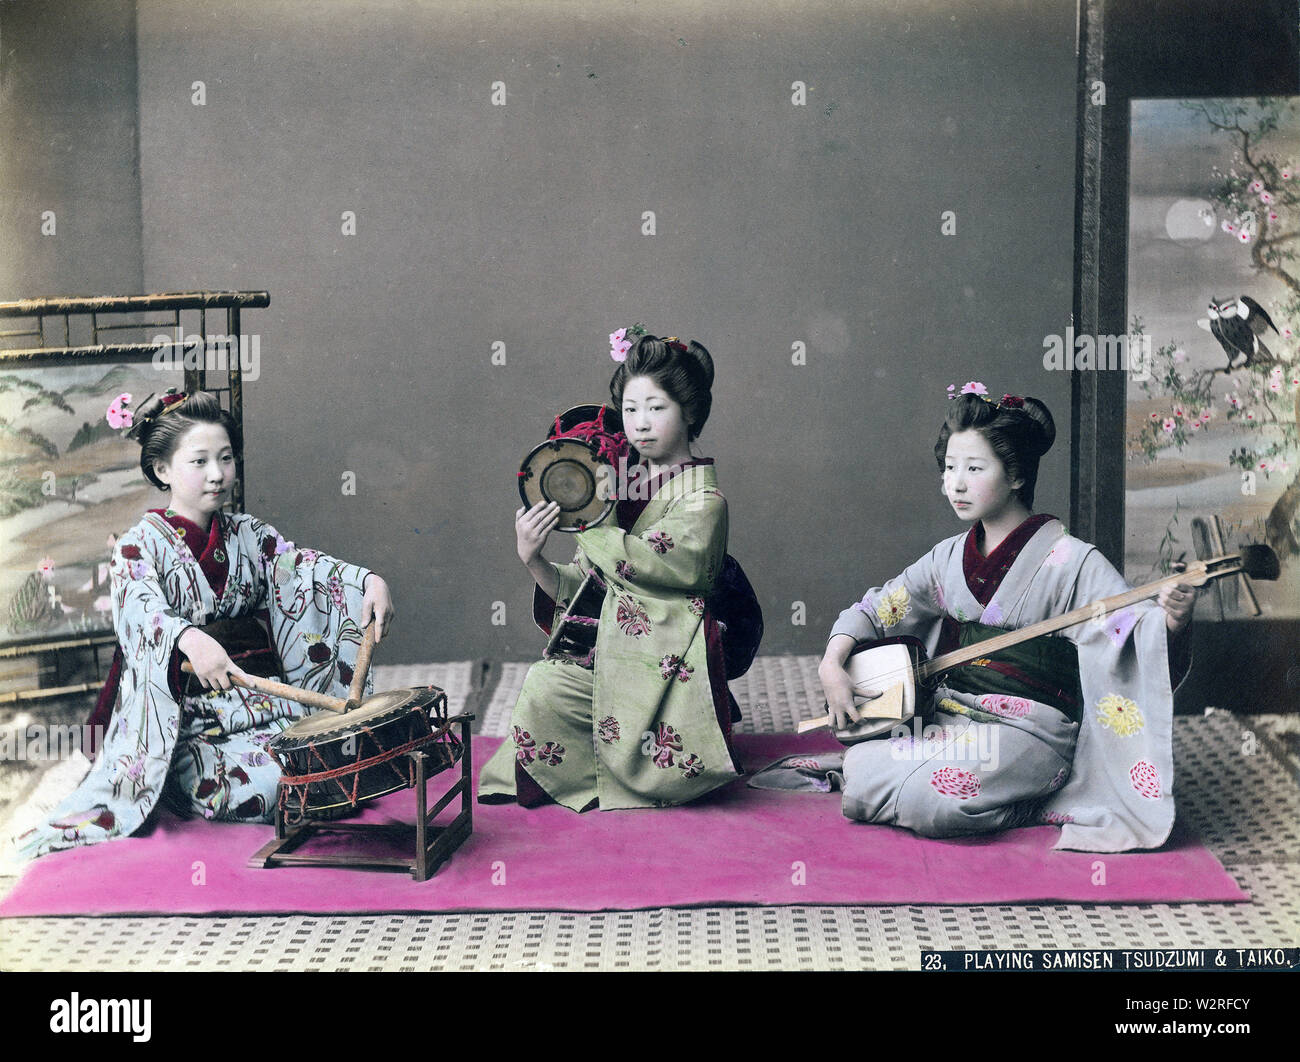 [1890s Japan - Maiko (Lehrling Geisha) Musik] - Maiko im Kimono und traditionellen Frisuren spielen tsutsumi (auch tsuzumi) Schulter Drums, shamisen, eine 3-saitige Musikinstrument und eine taiko Drum als ootsutsumi bekannt. 19 Vintage albumen Foto. Stockfoto